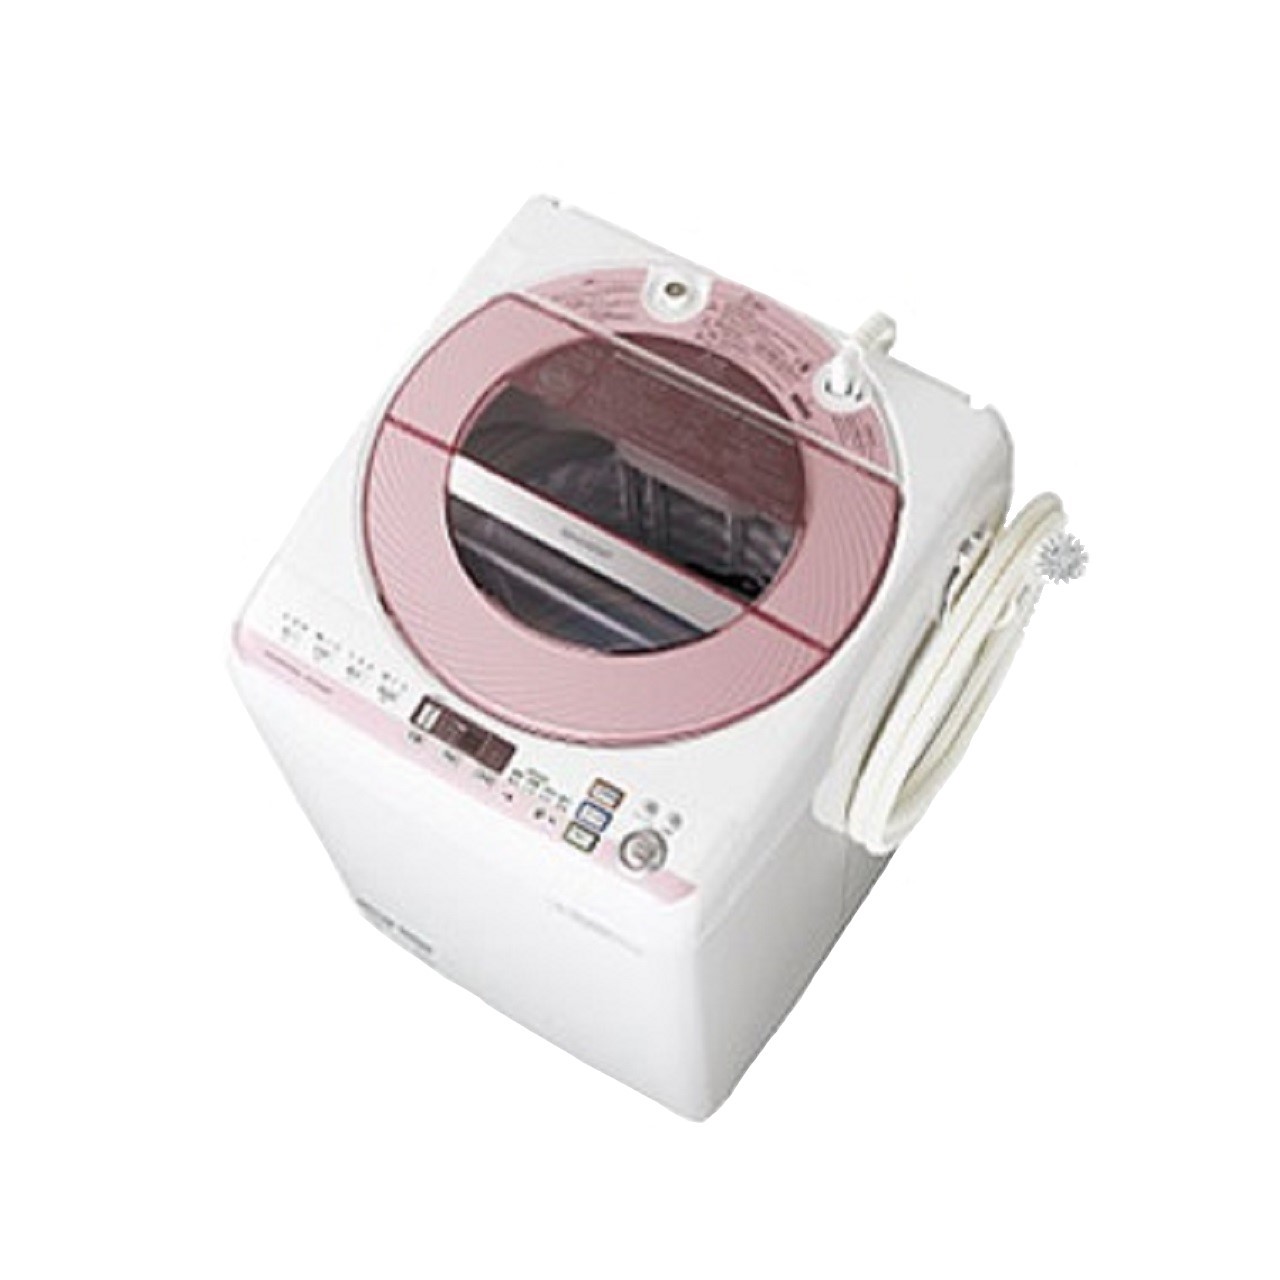 シャープES-GV80P全自動洗濯機